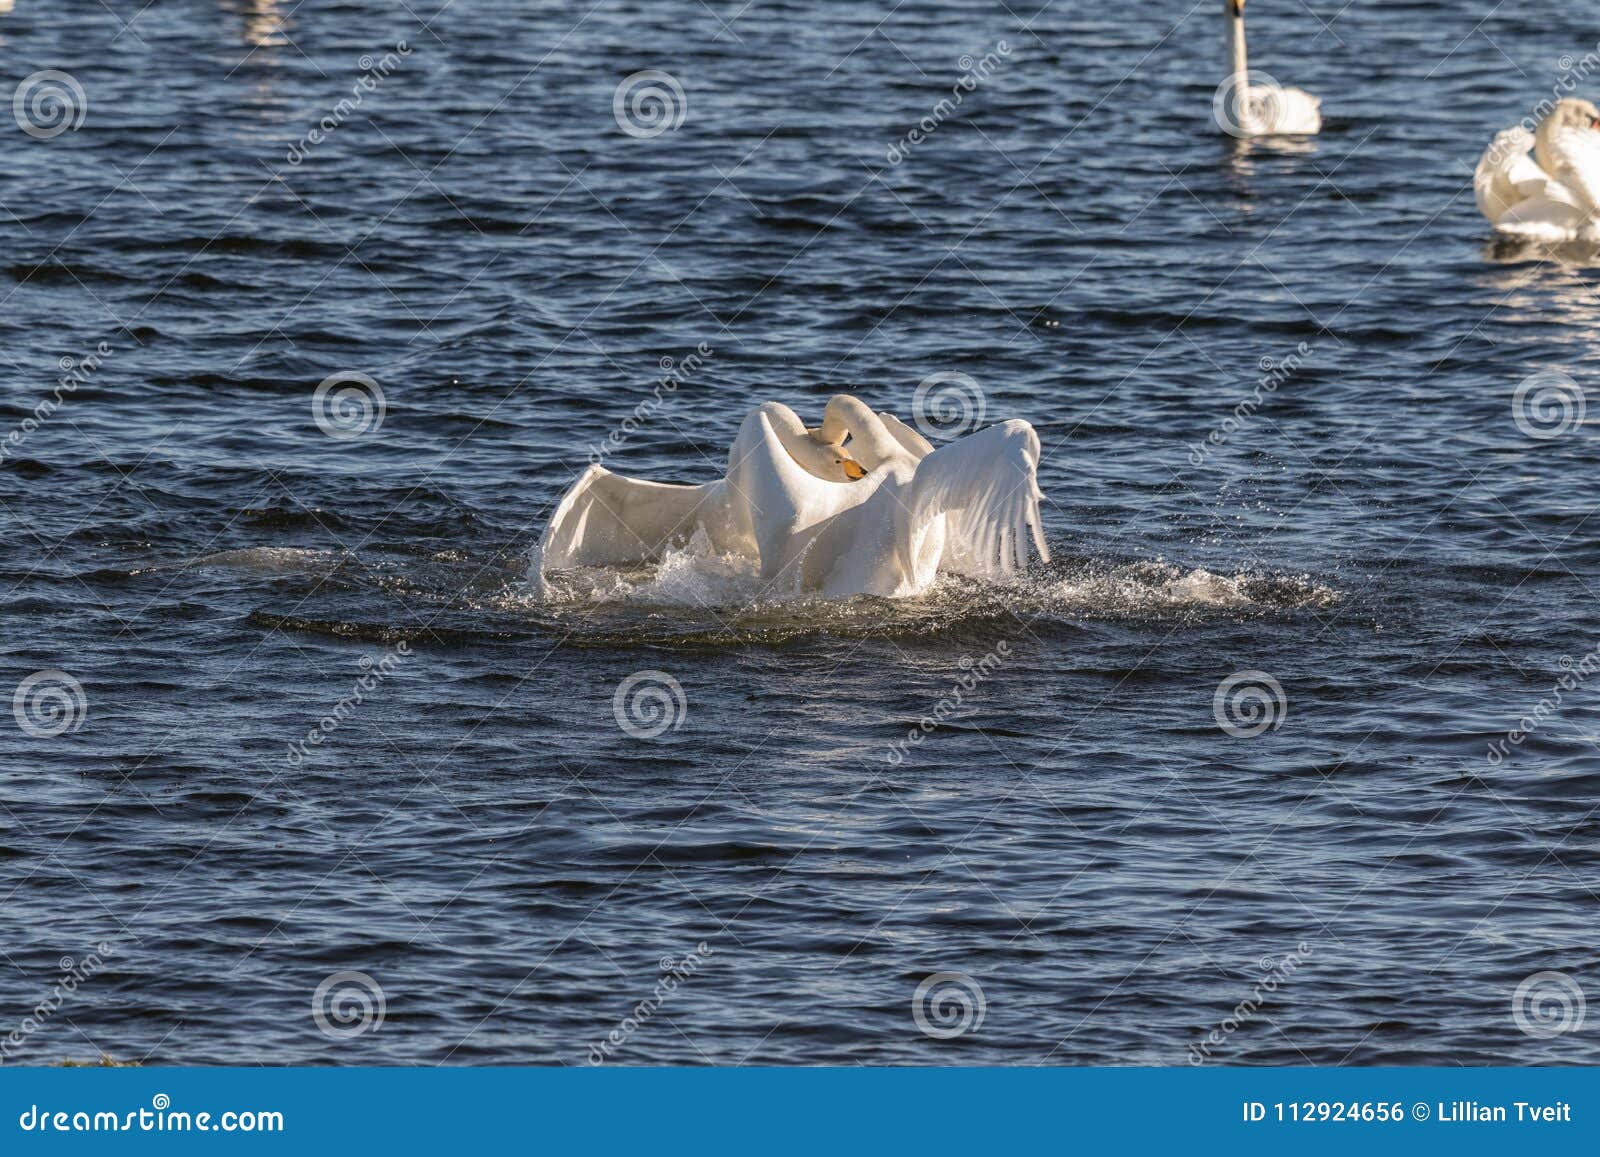 whooper swans, cygnus cygnus, fighting in the hananger water at lista, norway